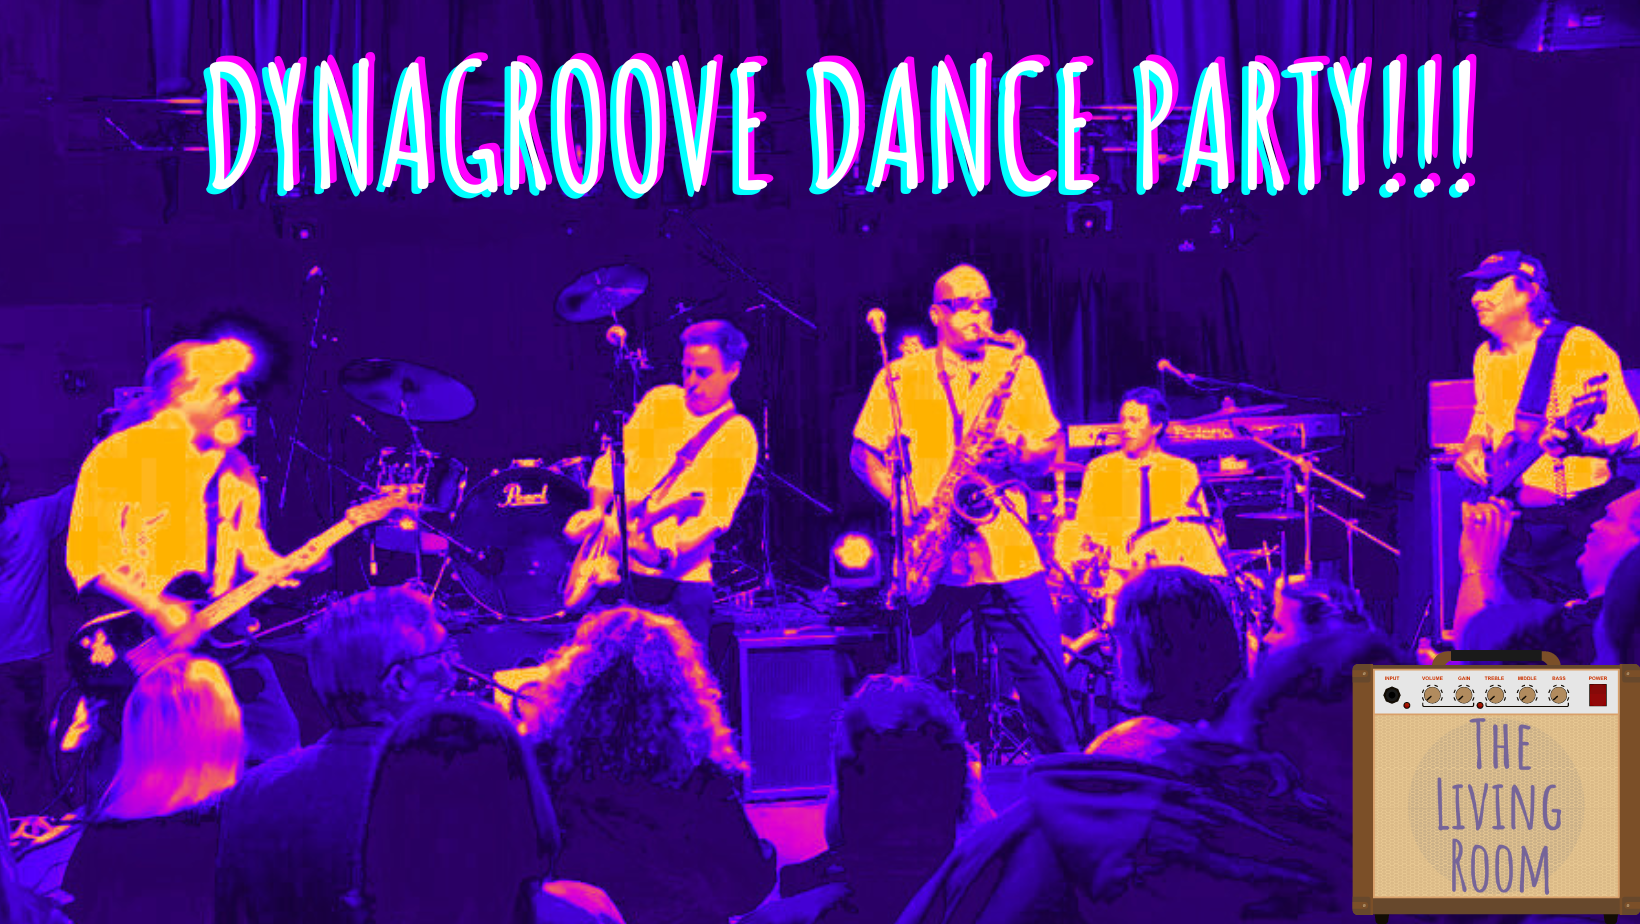 SAT. NOV. 4: DynaGroove Dance Party!